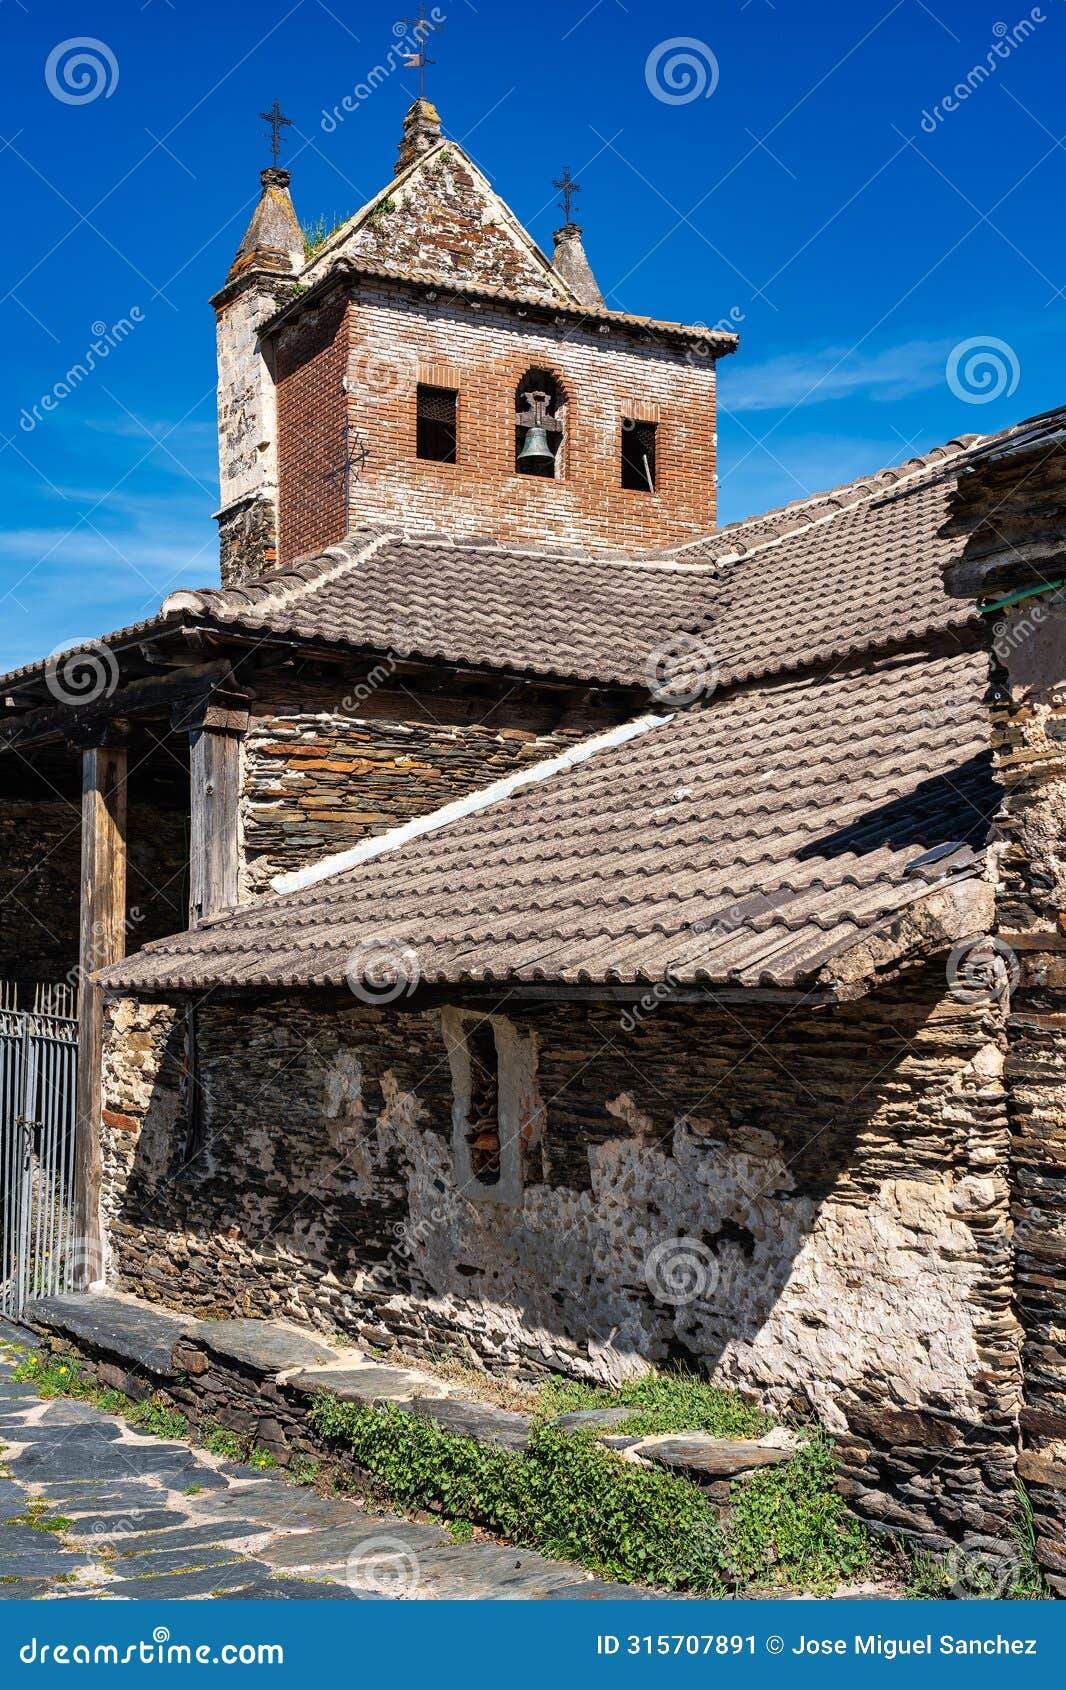 medieval stone church in an old black village in guadalajara, majaelrayo.